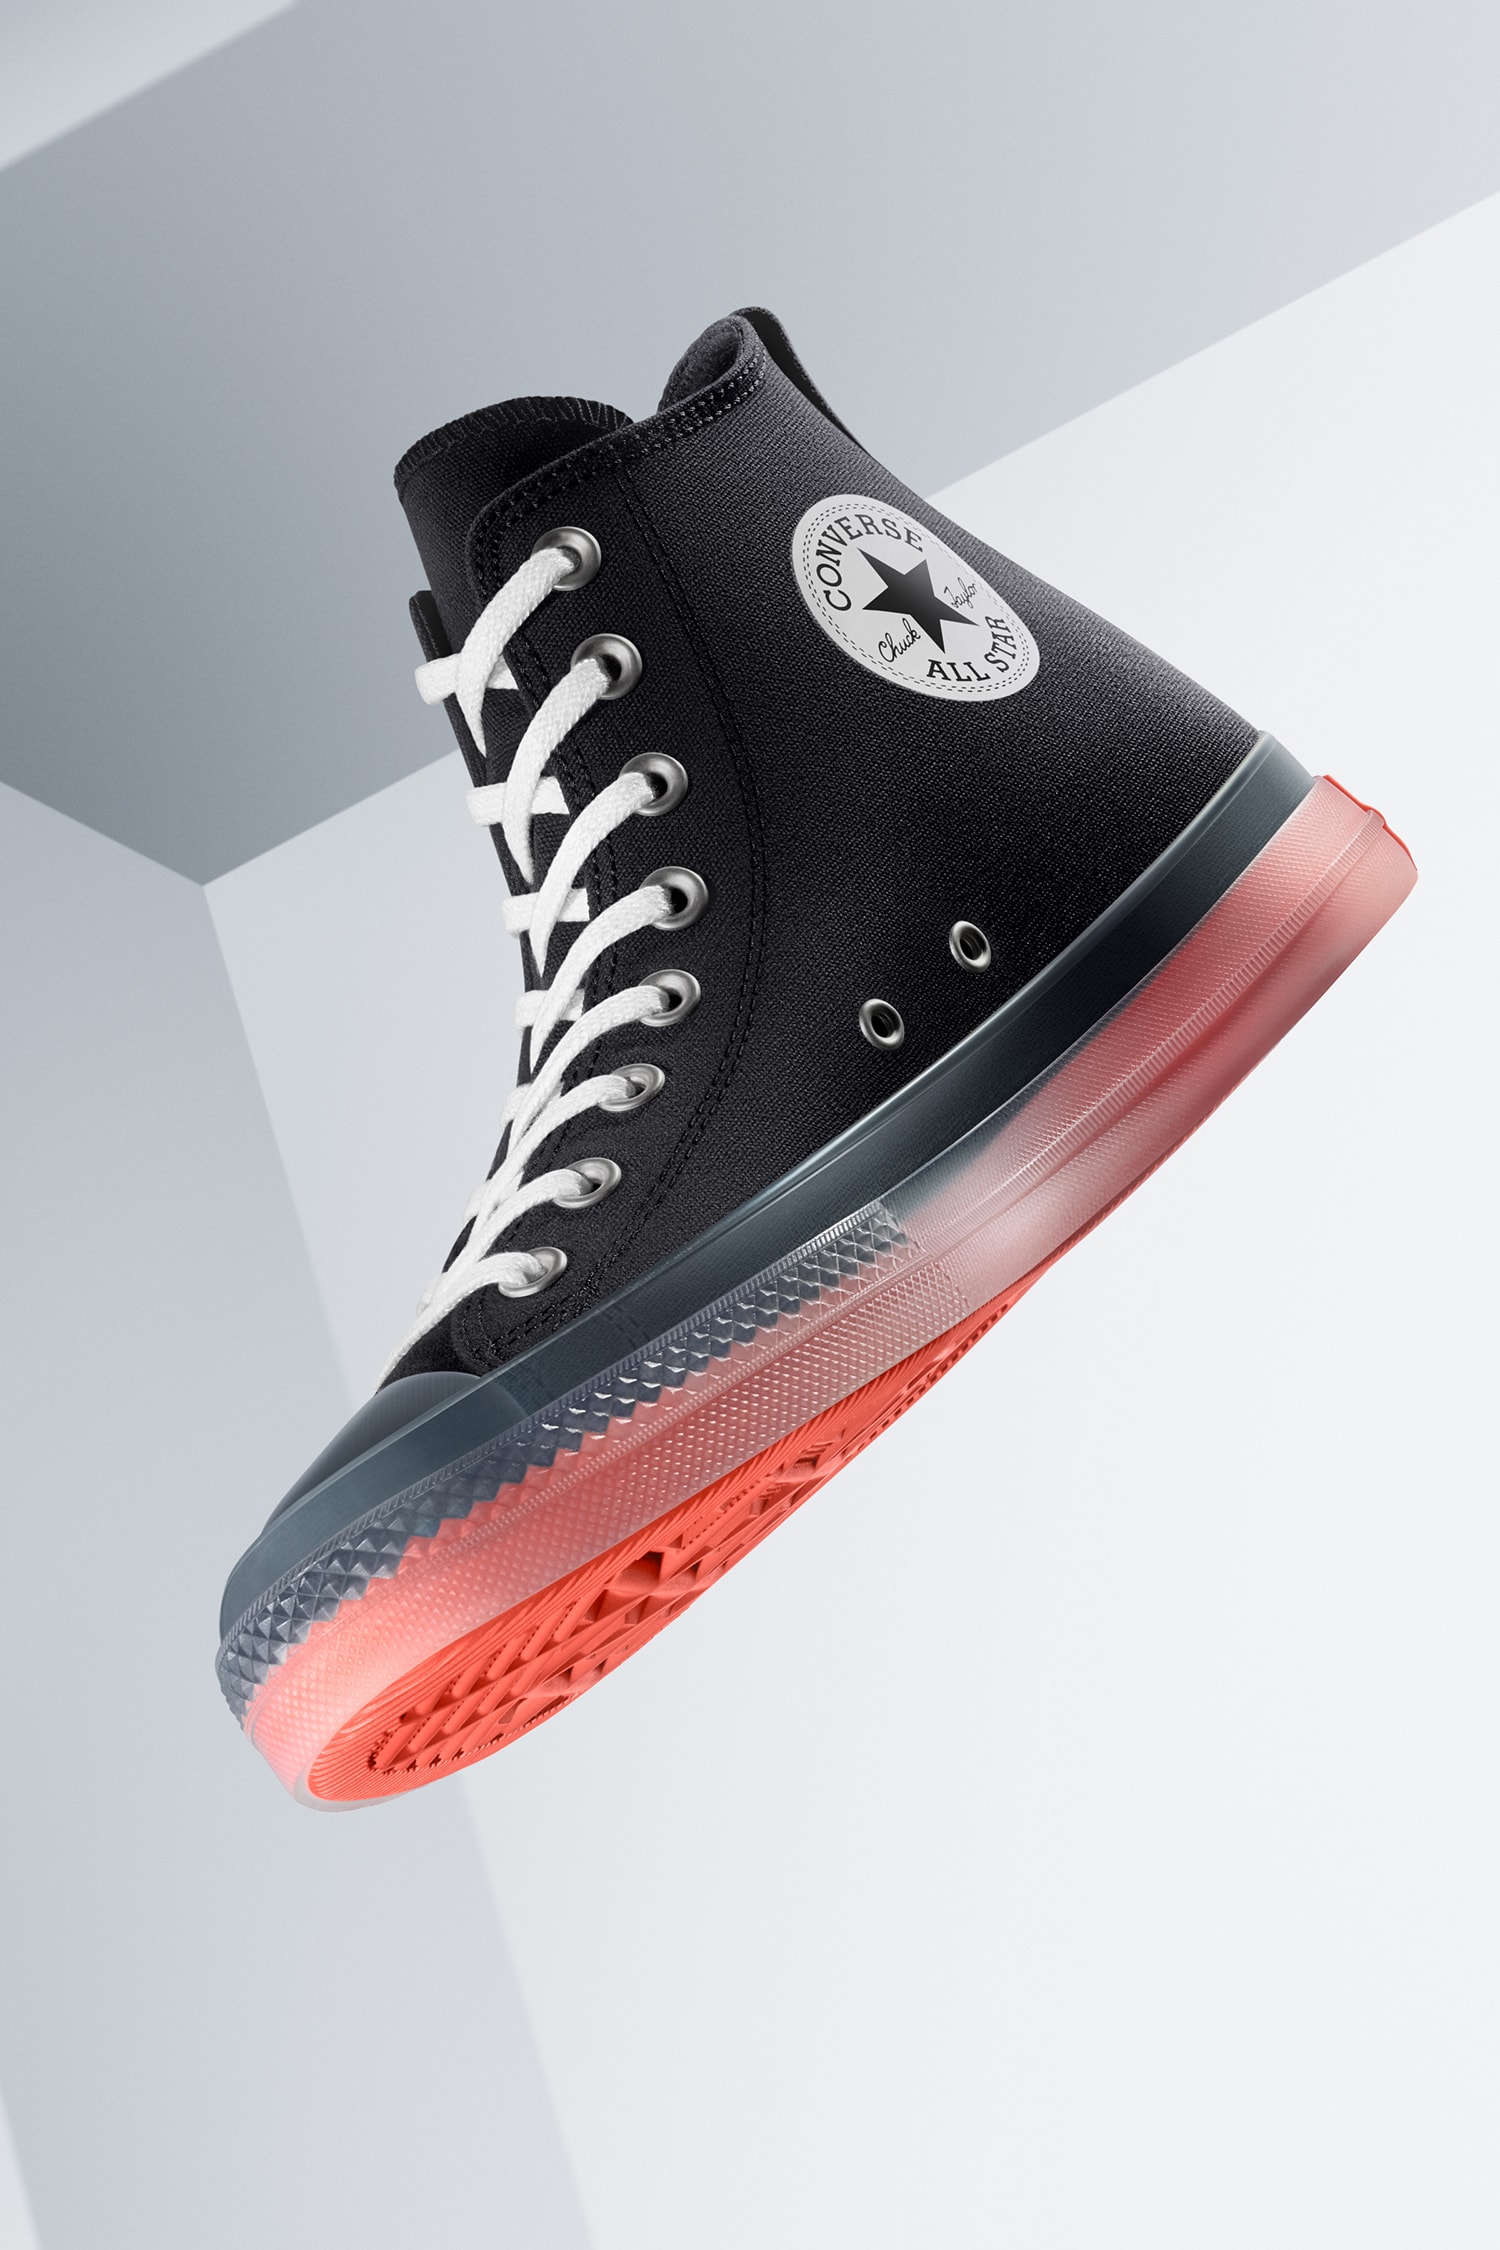 Converse 再度为 CX 系列推出全新鞋款